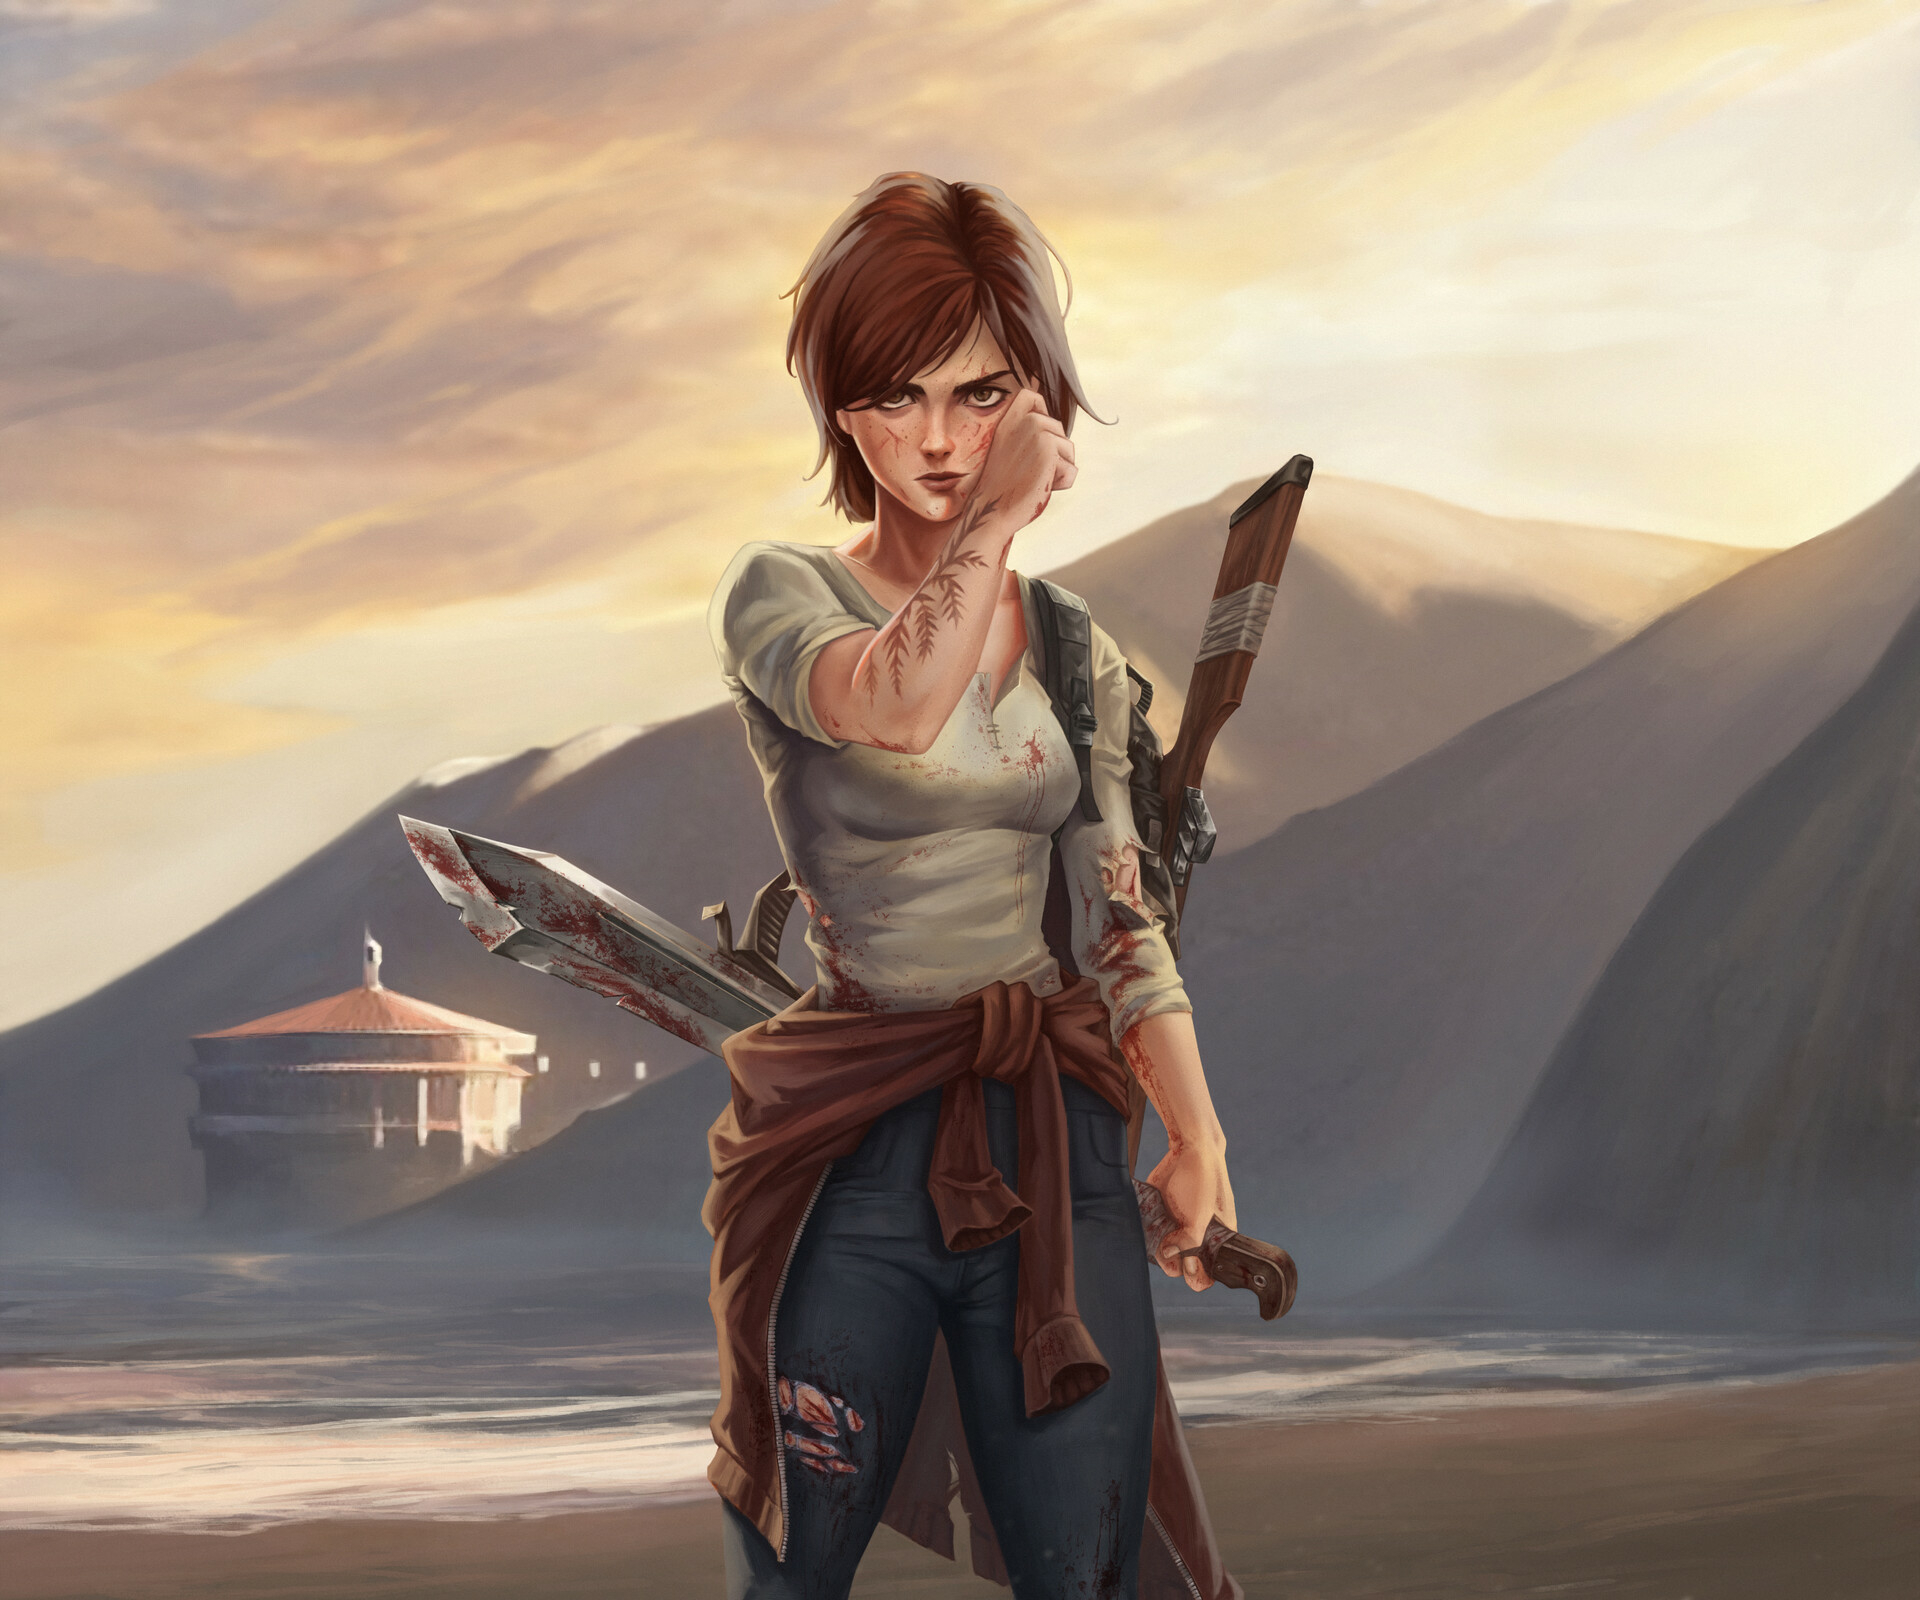 Ellie The Last of Us 2 4K Wallpaper #5.2484